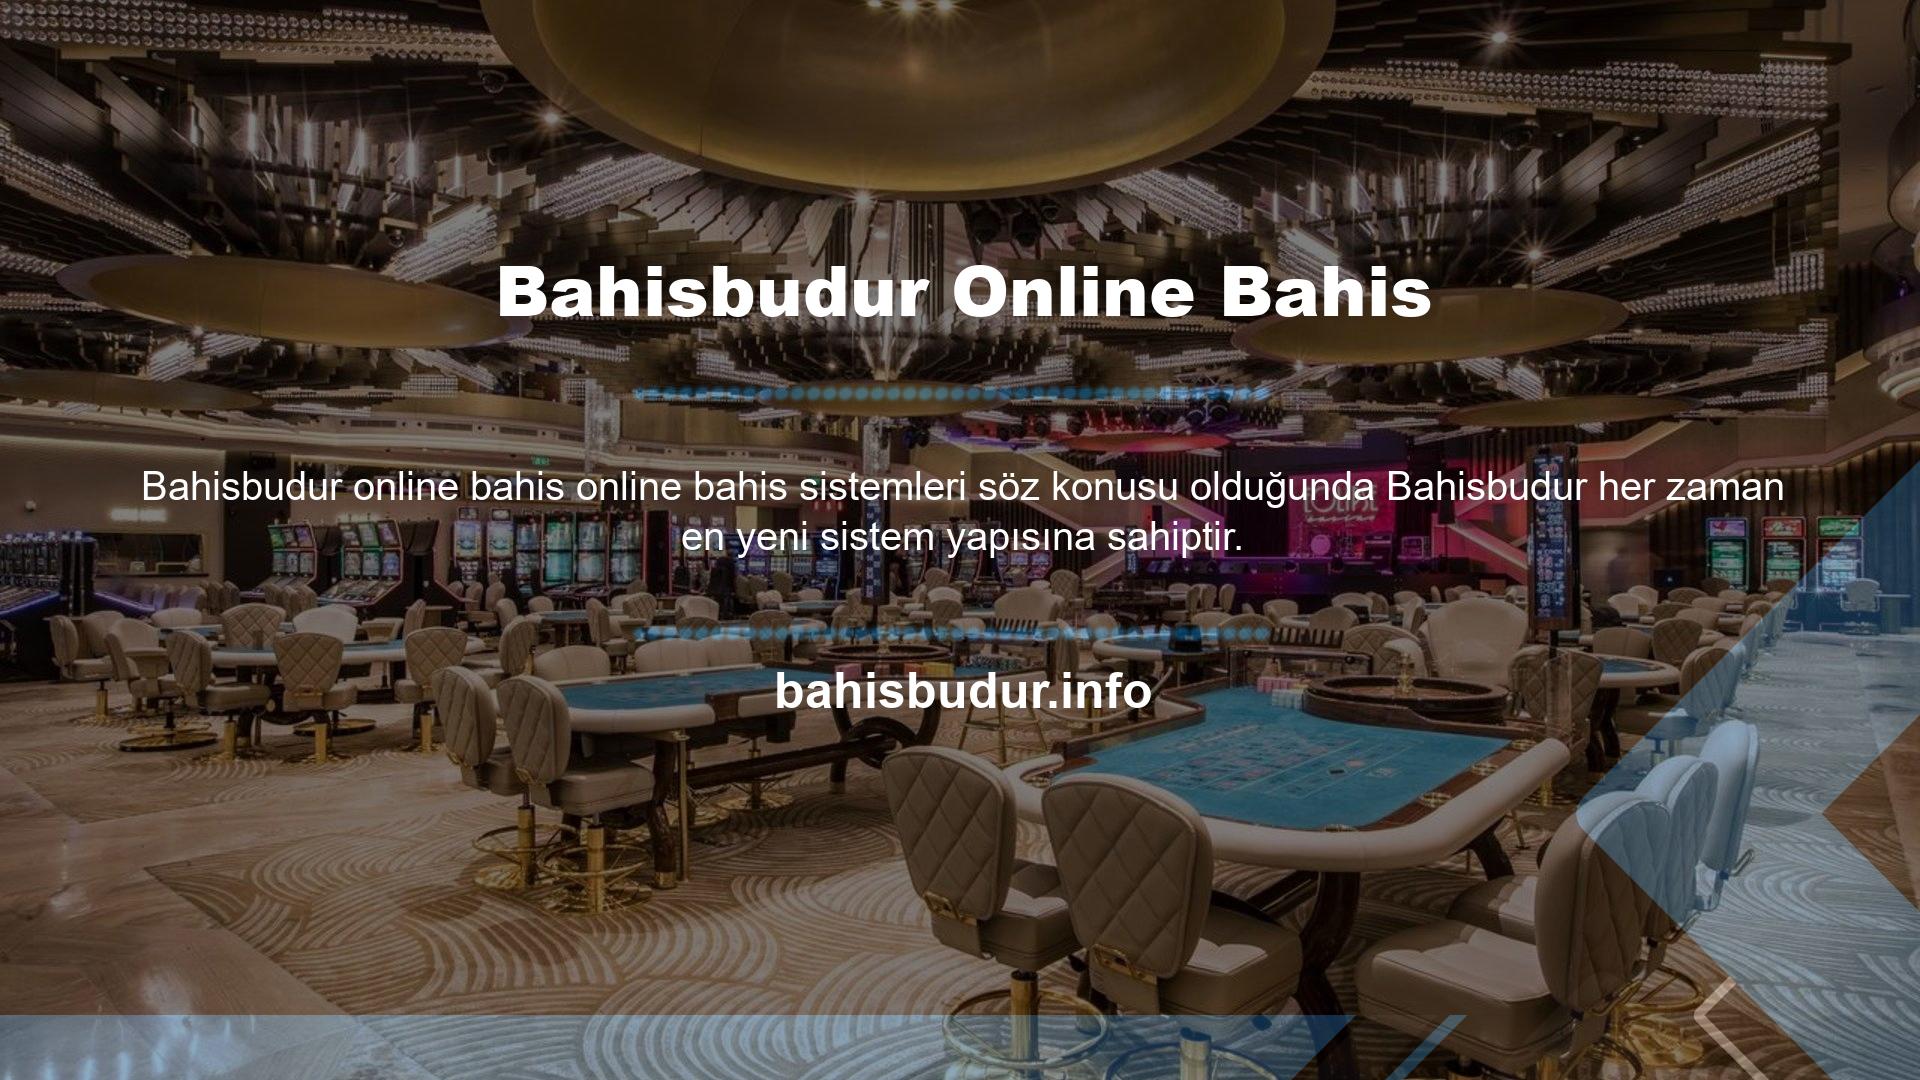 Bu açıdan bakıldığında, Bahisbudur genel yapısı ve sistemleri birçok yönden güven ve kaliteyi geliştirmek için alanlar açabilir